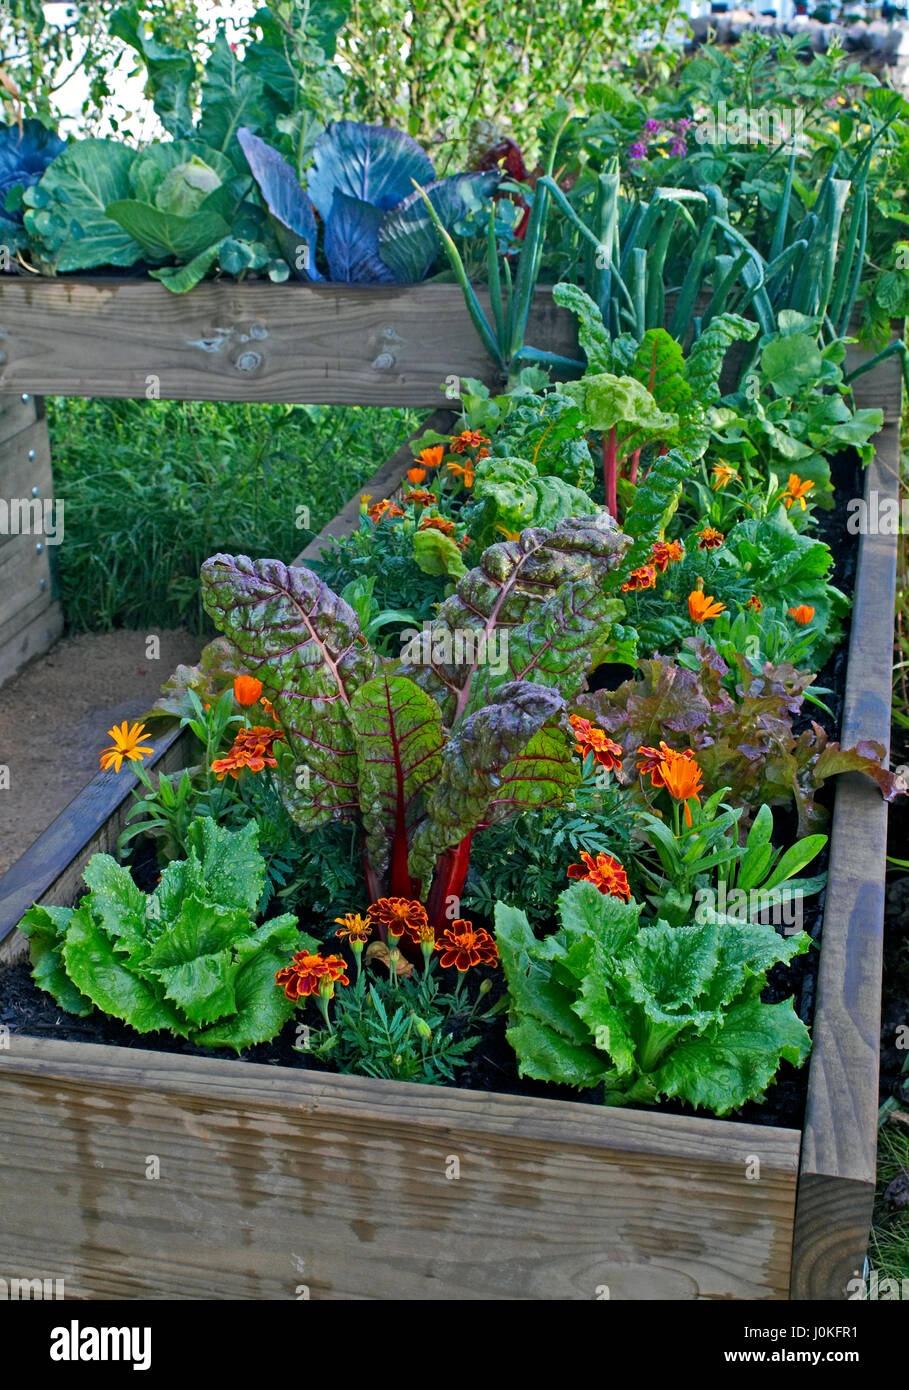 Un lit de légumes et fleurs dans un jardin urbain Banque D'Images